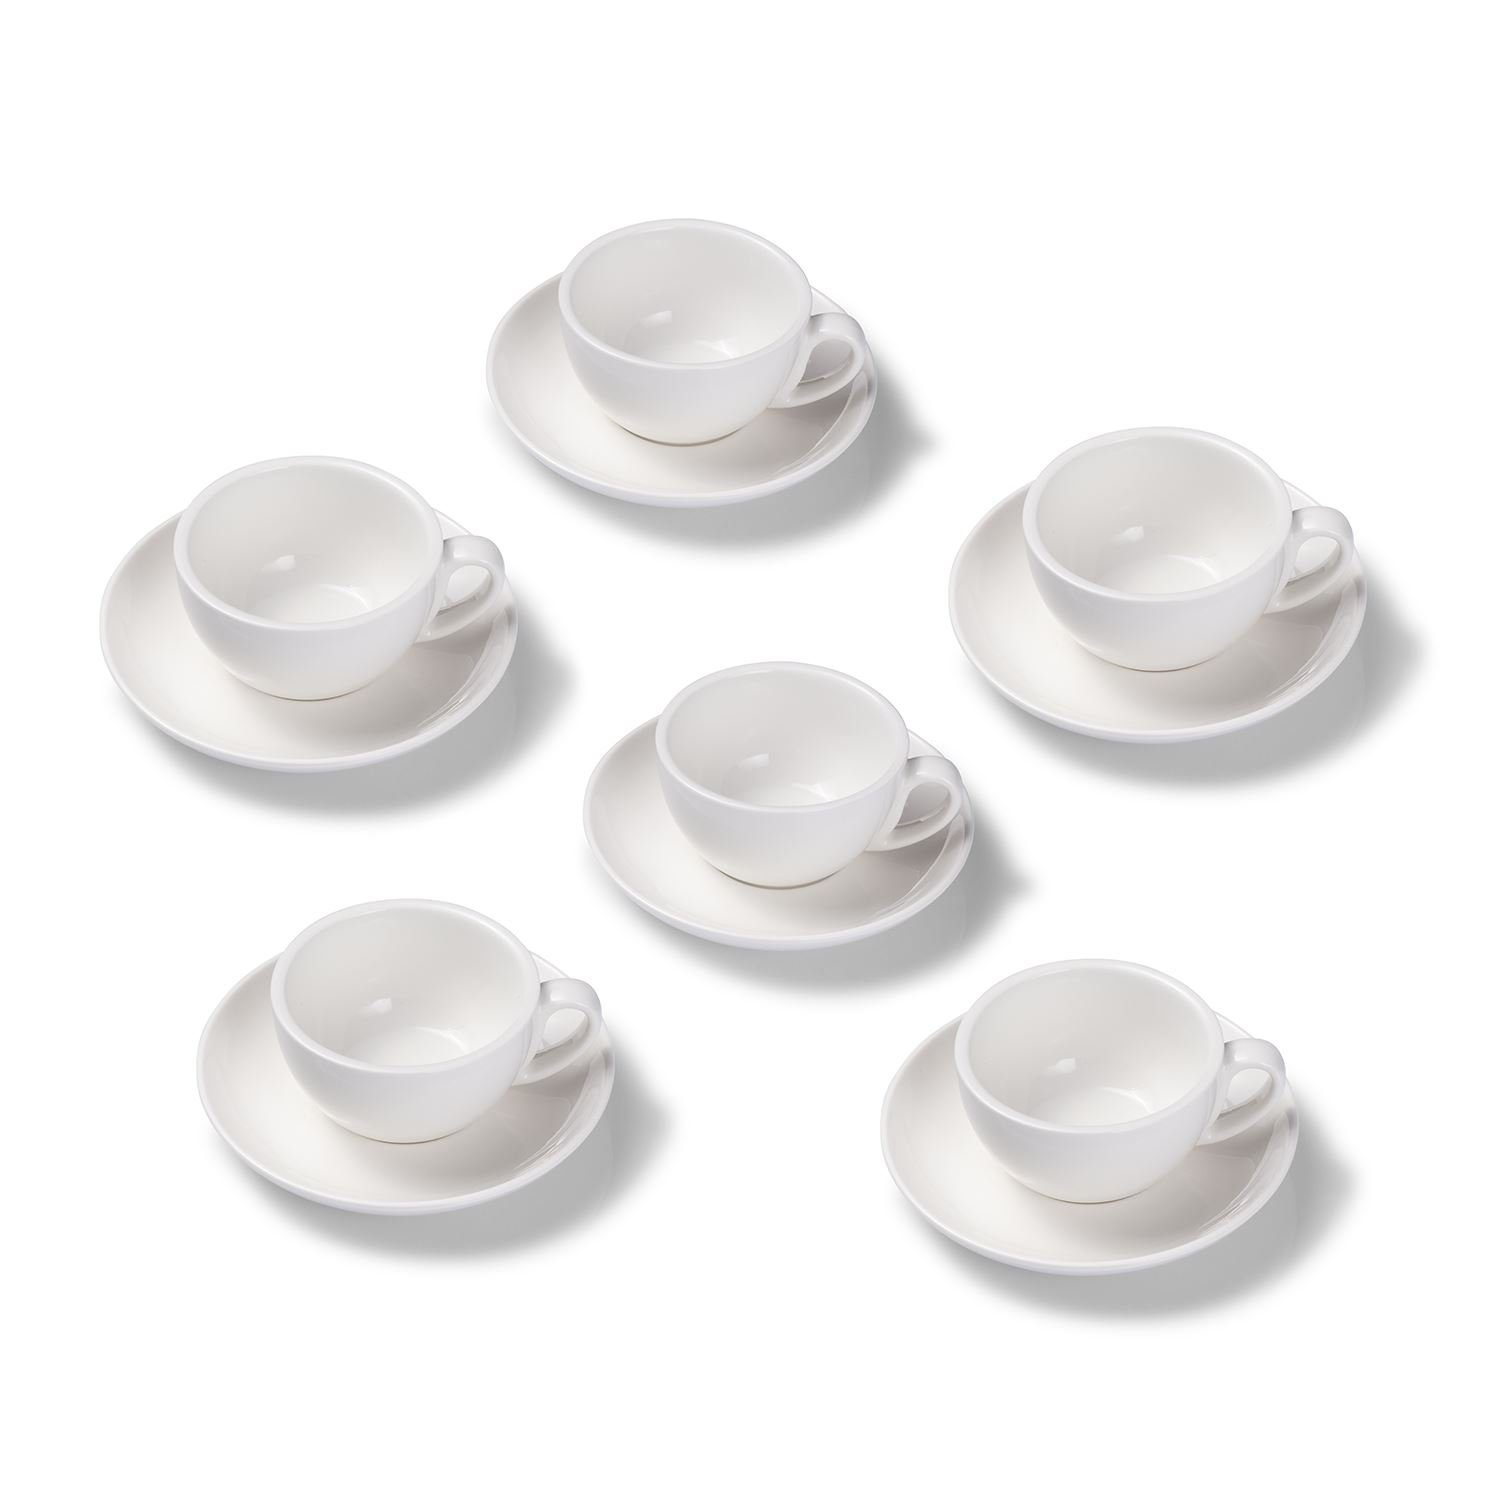 Terra Home Cappuccinotasse 6er Чашки для капучино-Set, Weiß glossy 200 ml mit Untertasse, Porzellan, spülmaschinenfest,extra dickwandig